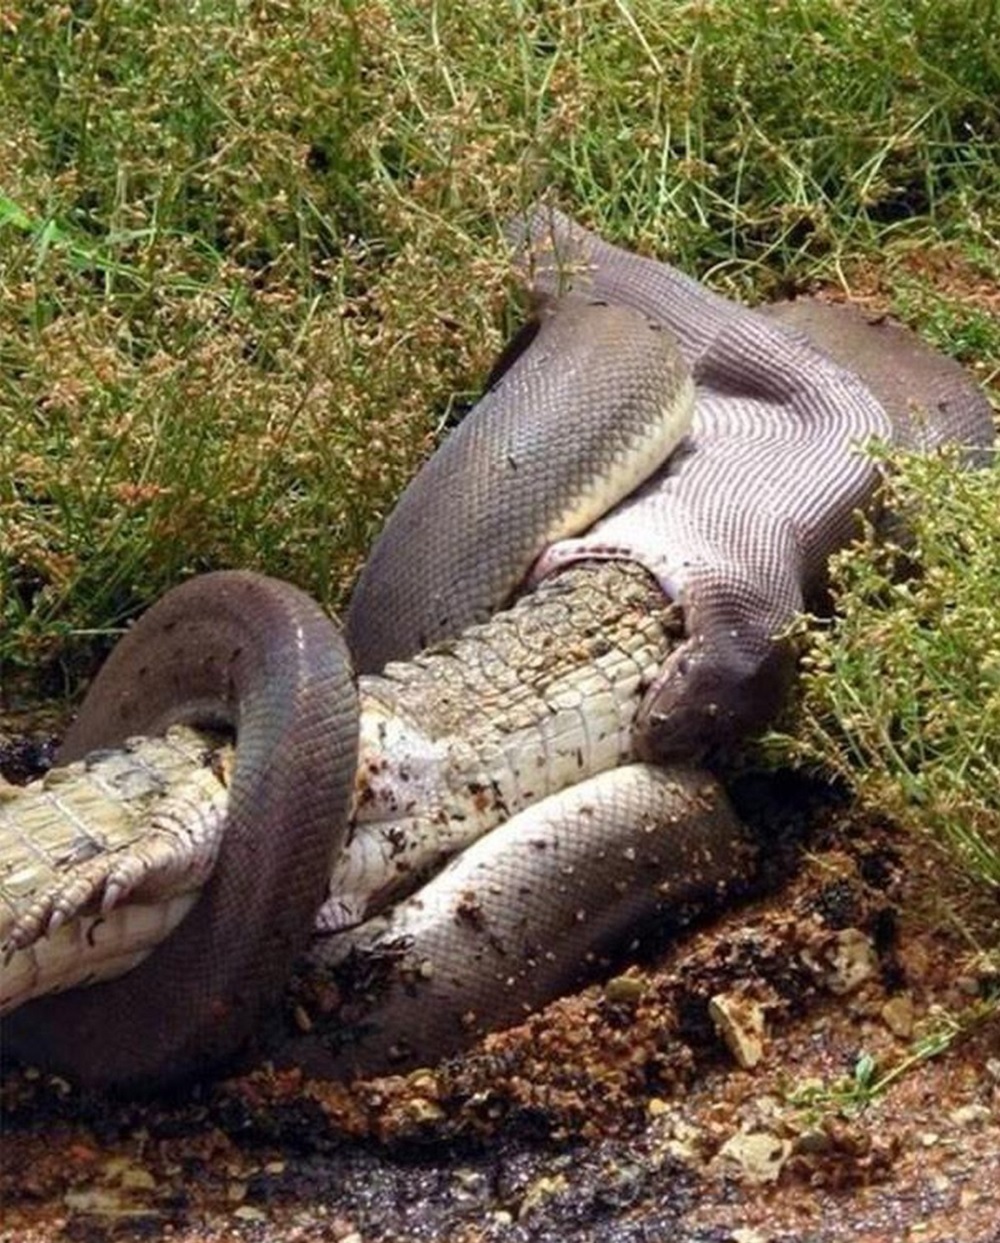 Anaconda se come un cocodrilo